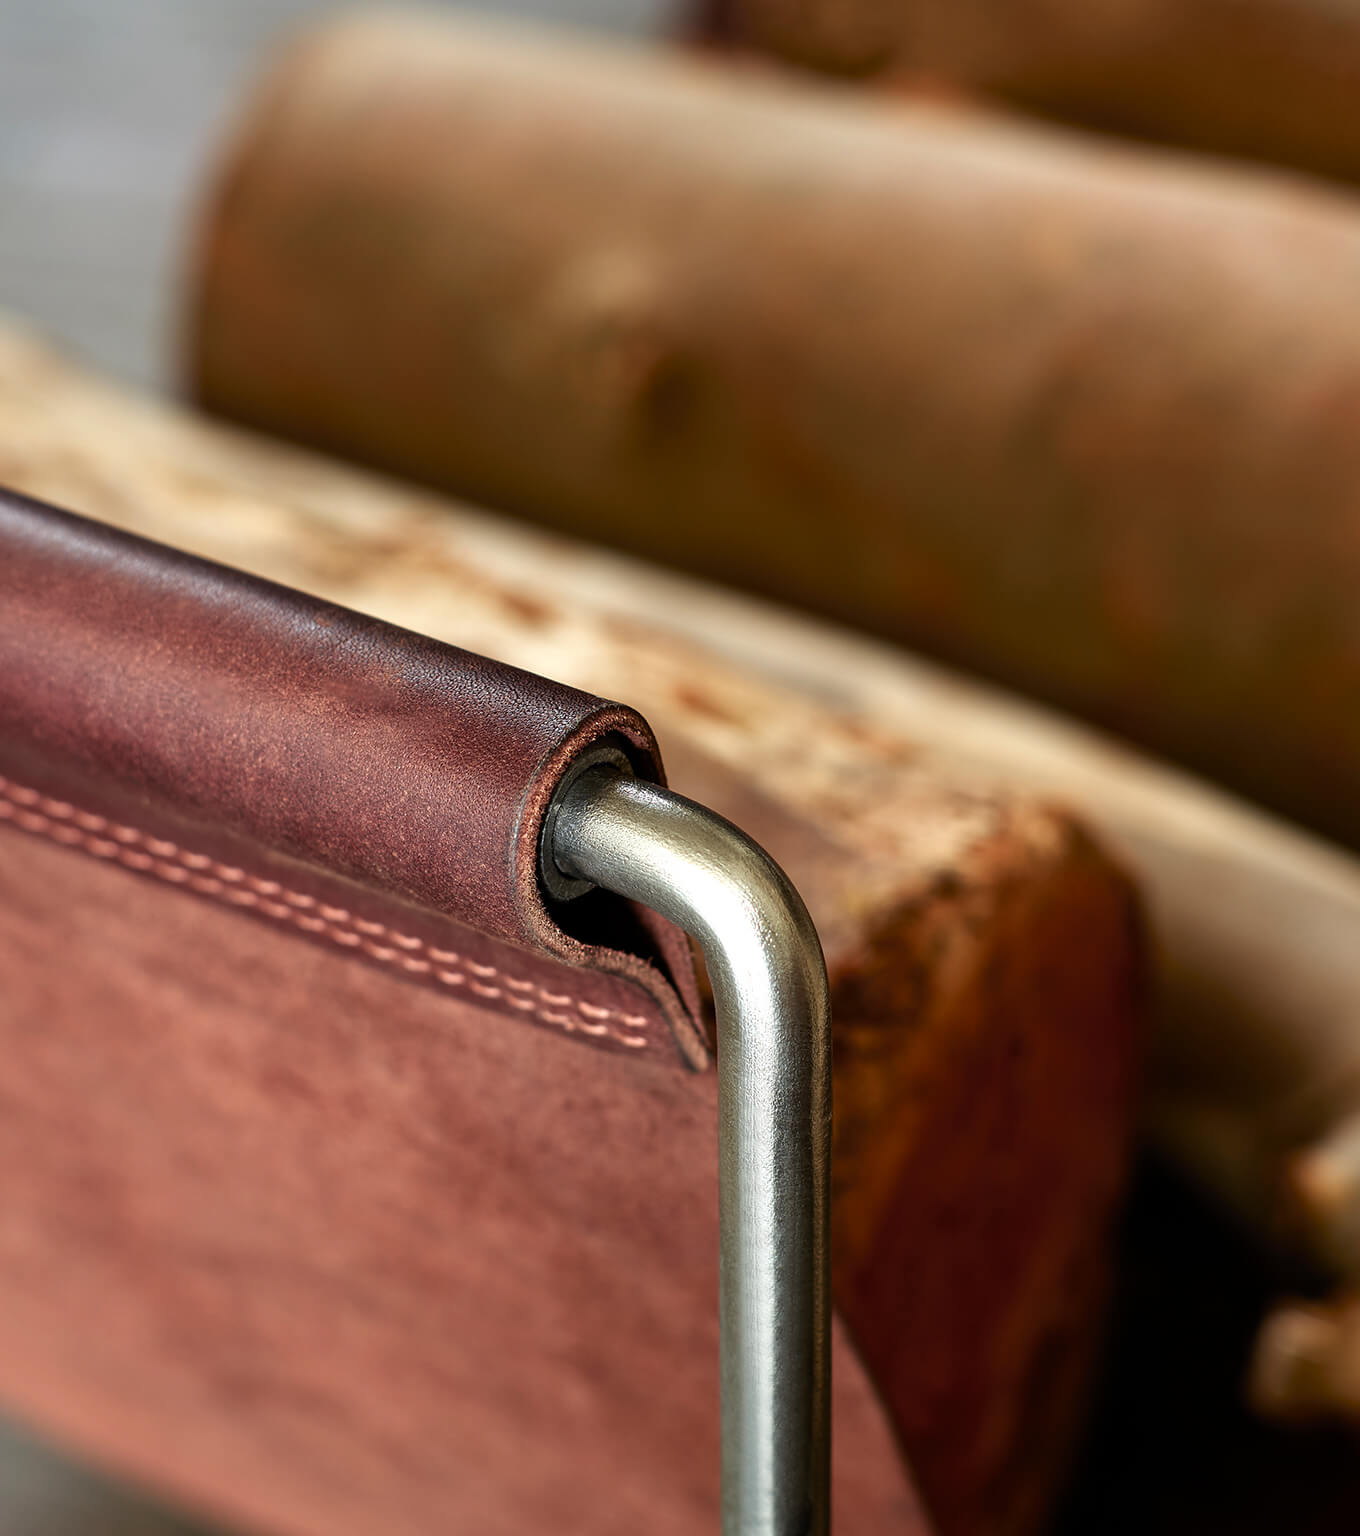 Sling leather log holder close up